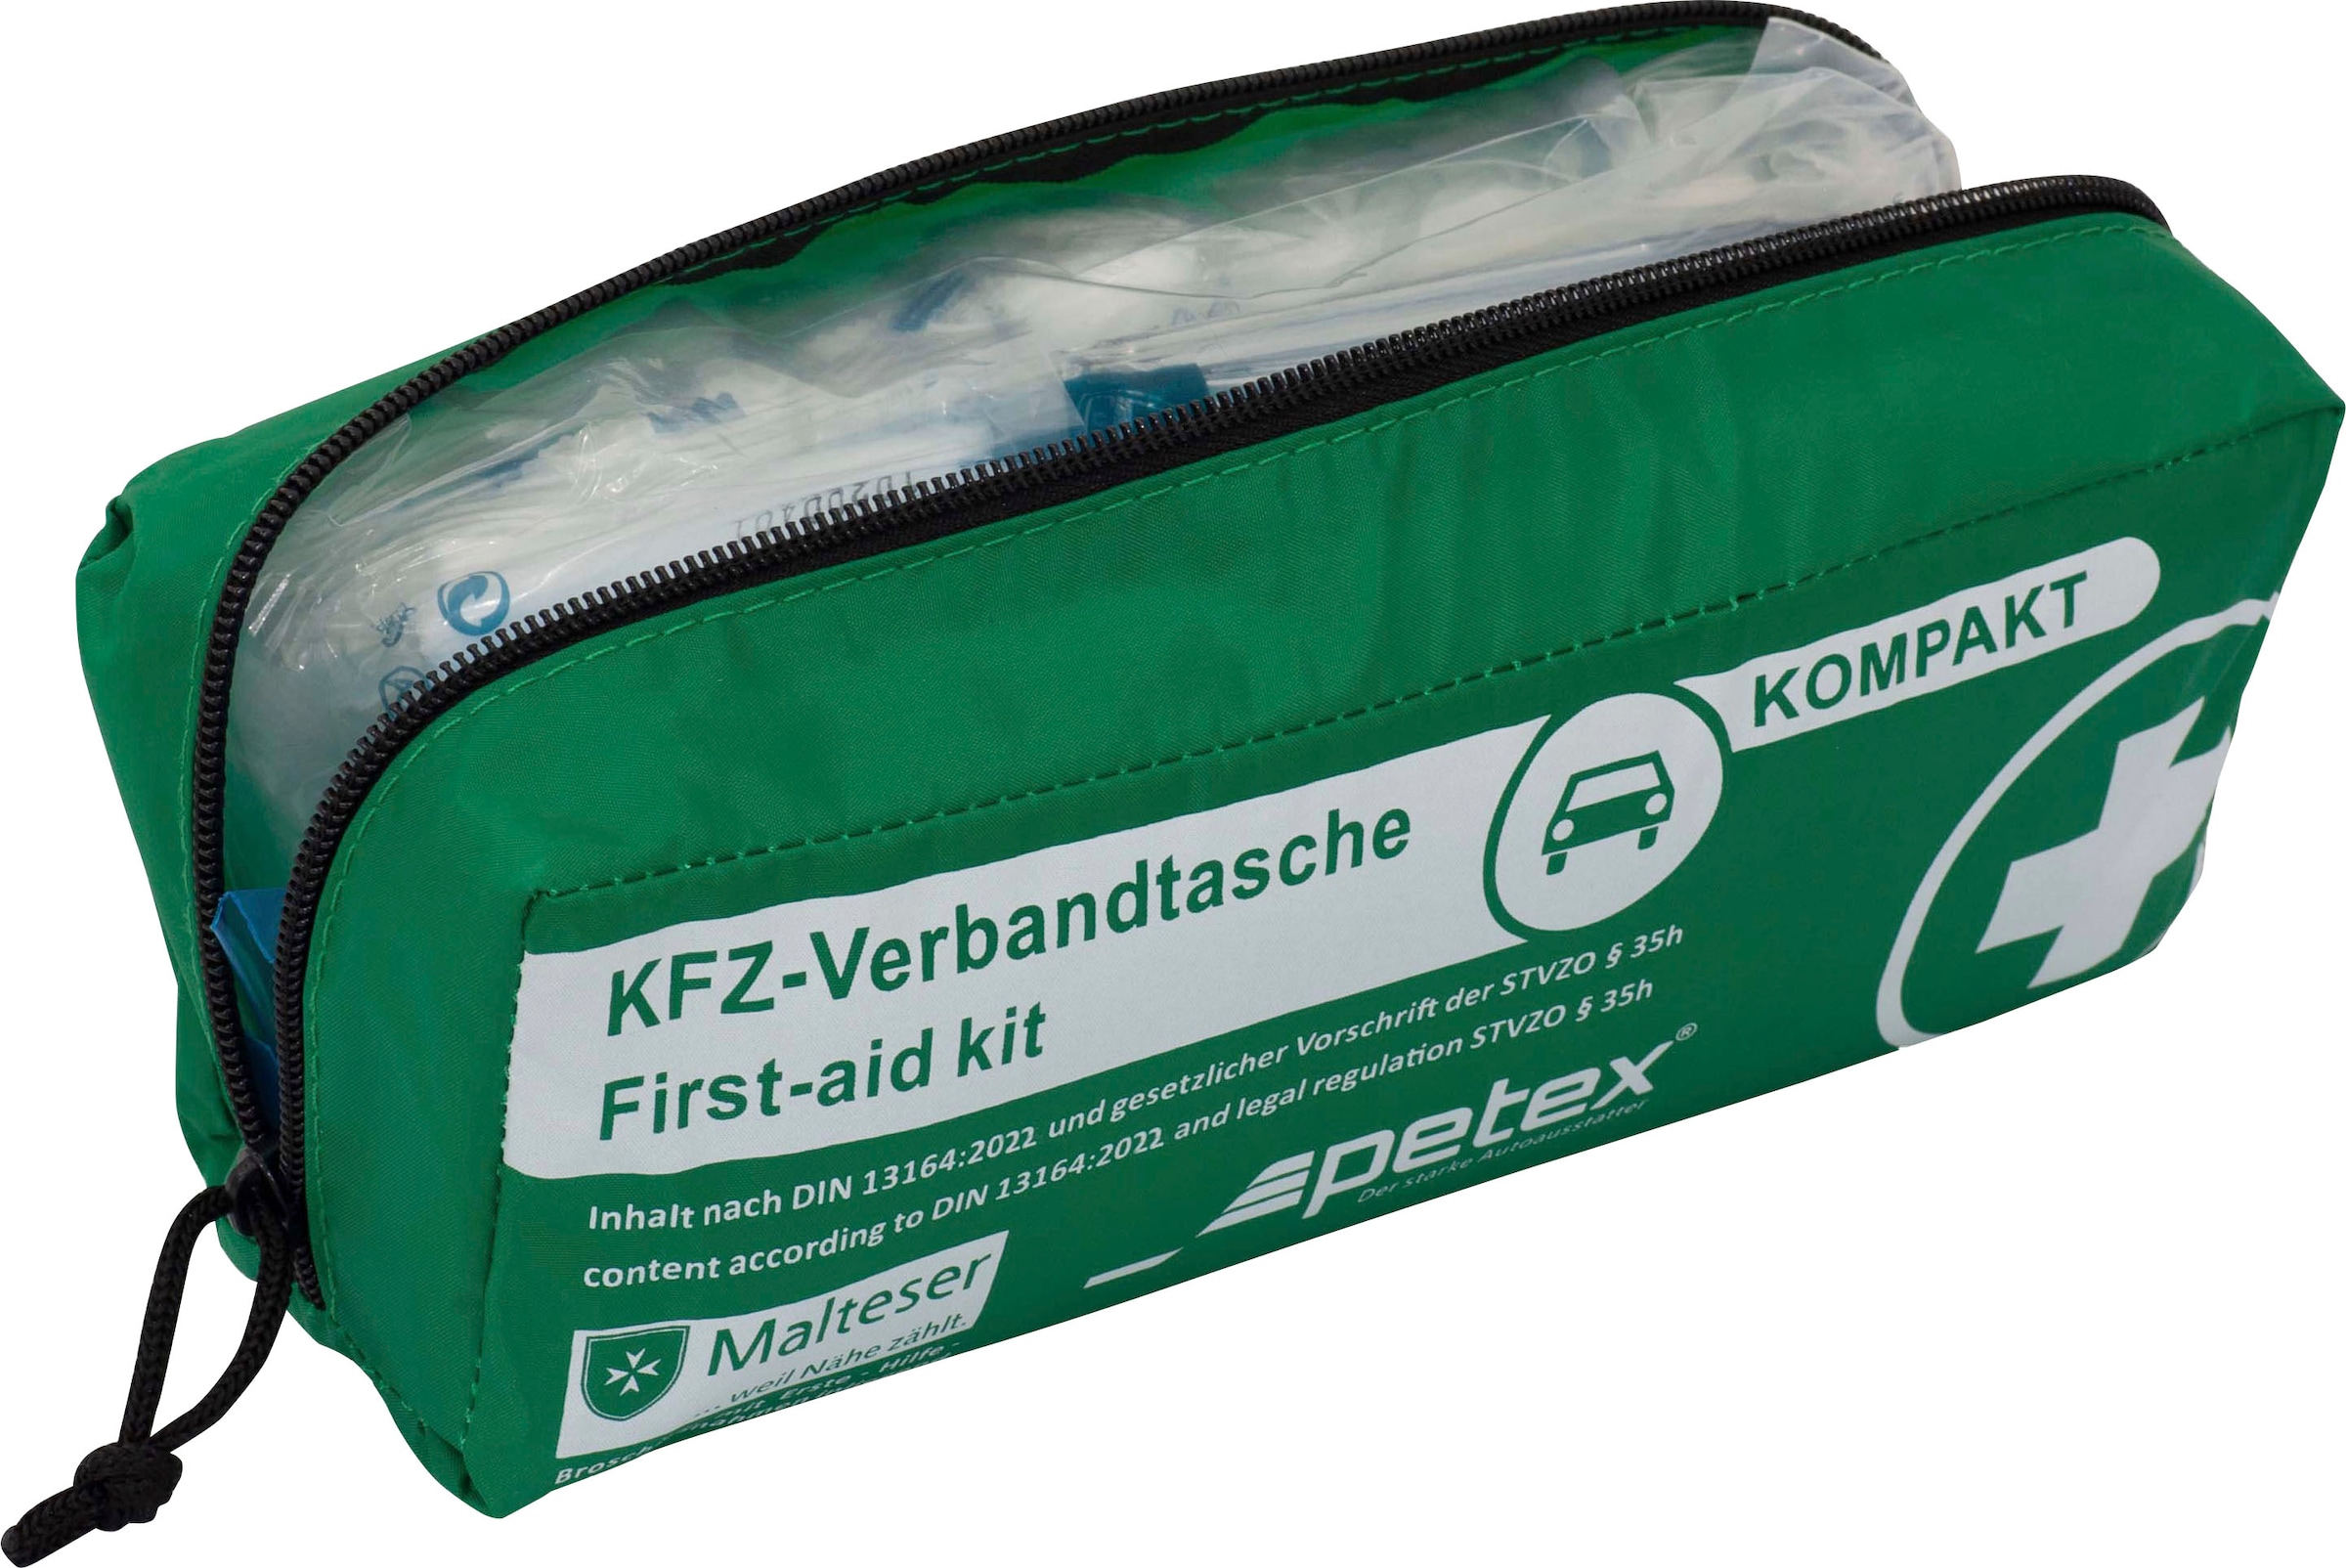 Petex KFZ-Verbandtasche 2 x KFZ Verbandtasche schwarz DIN 13164